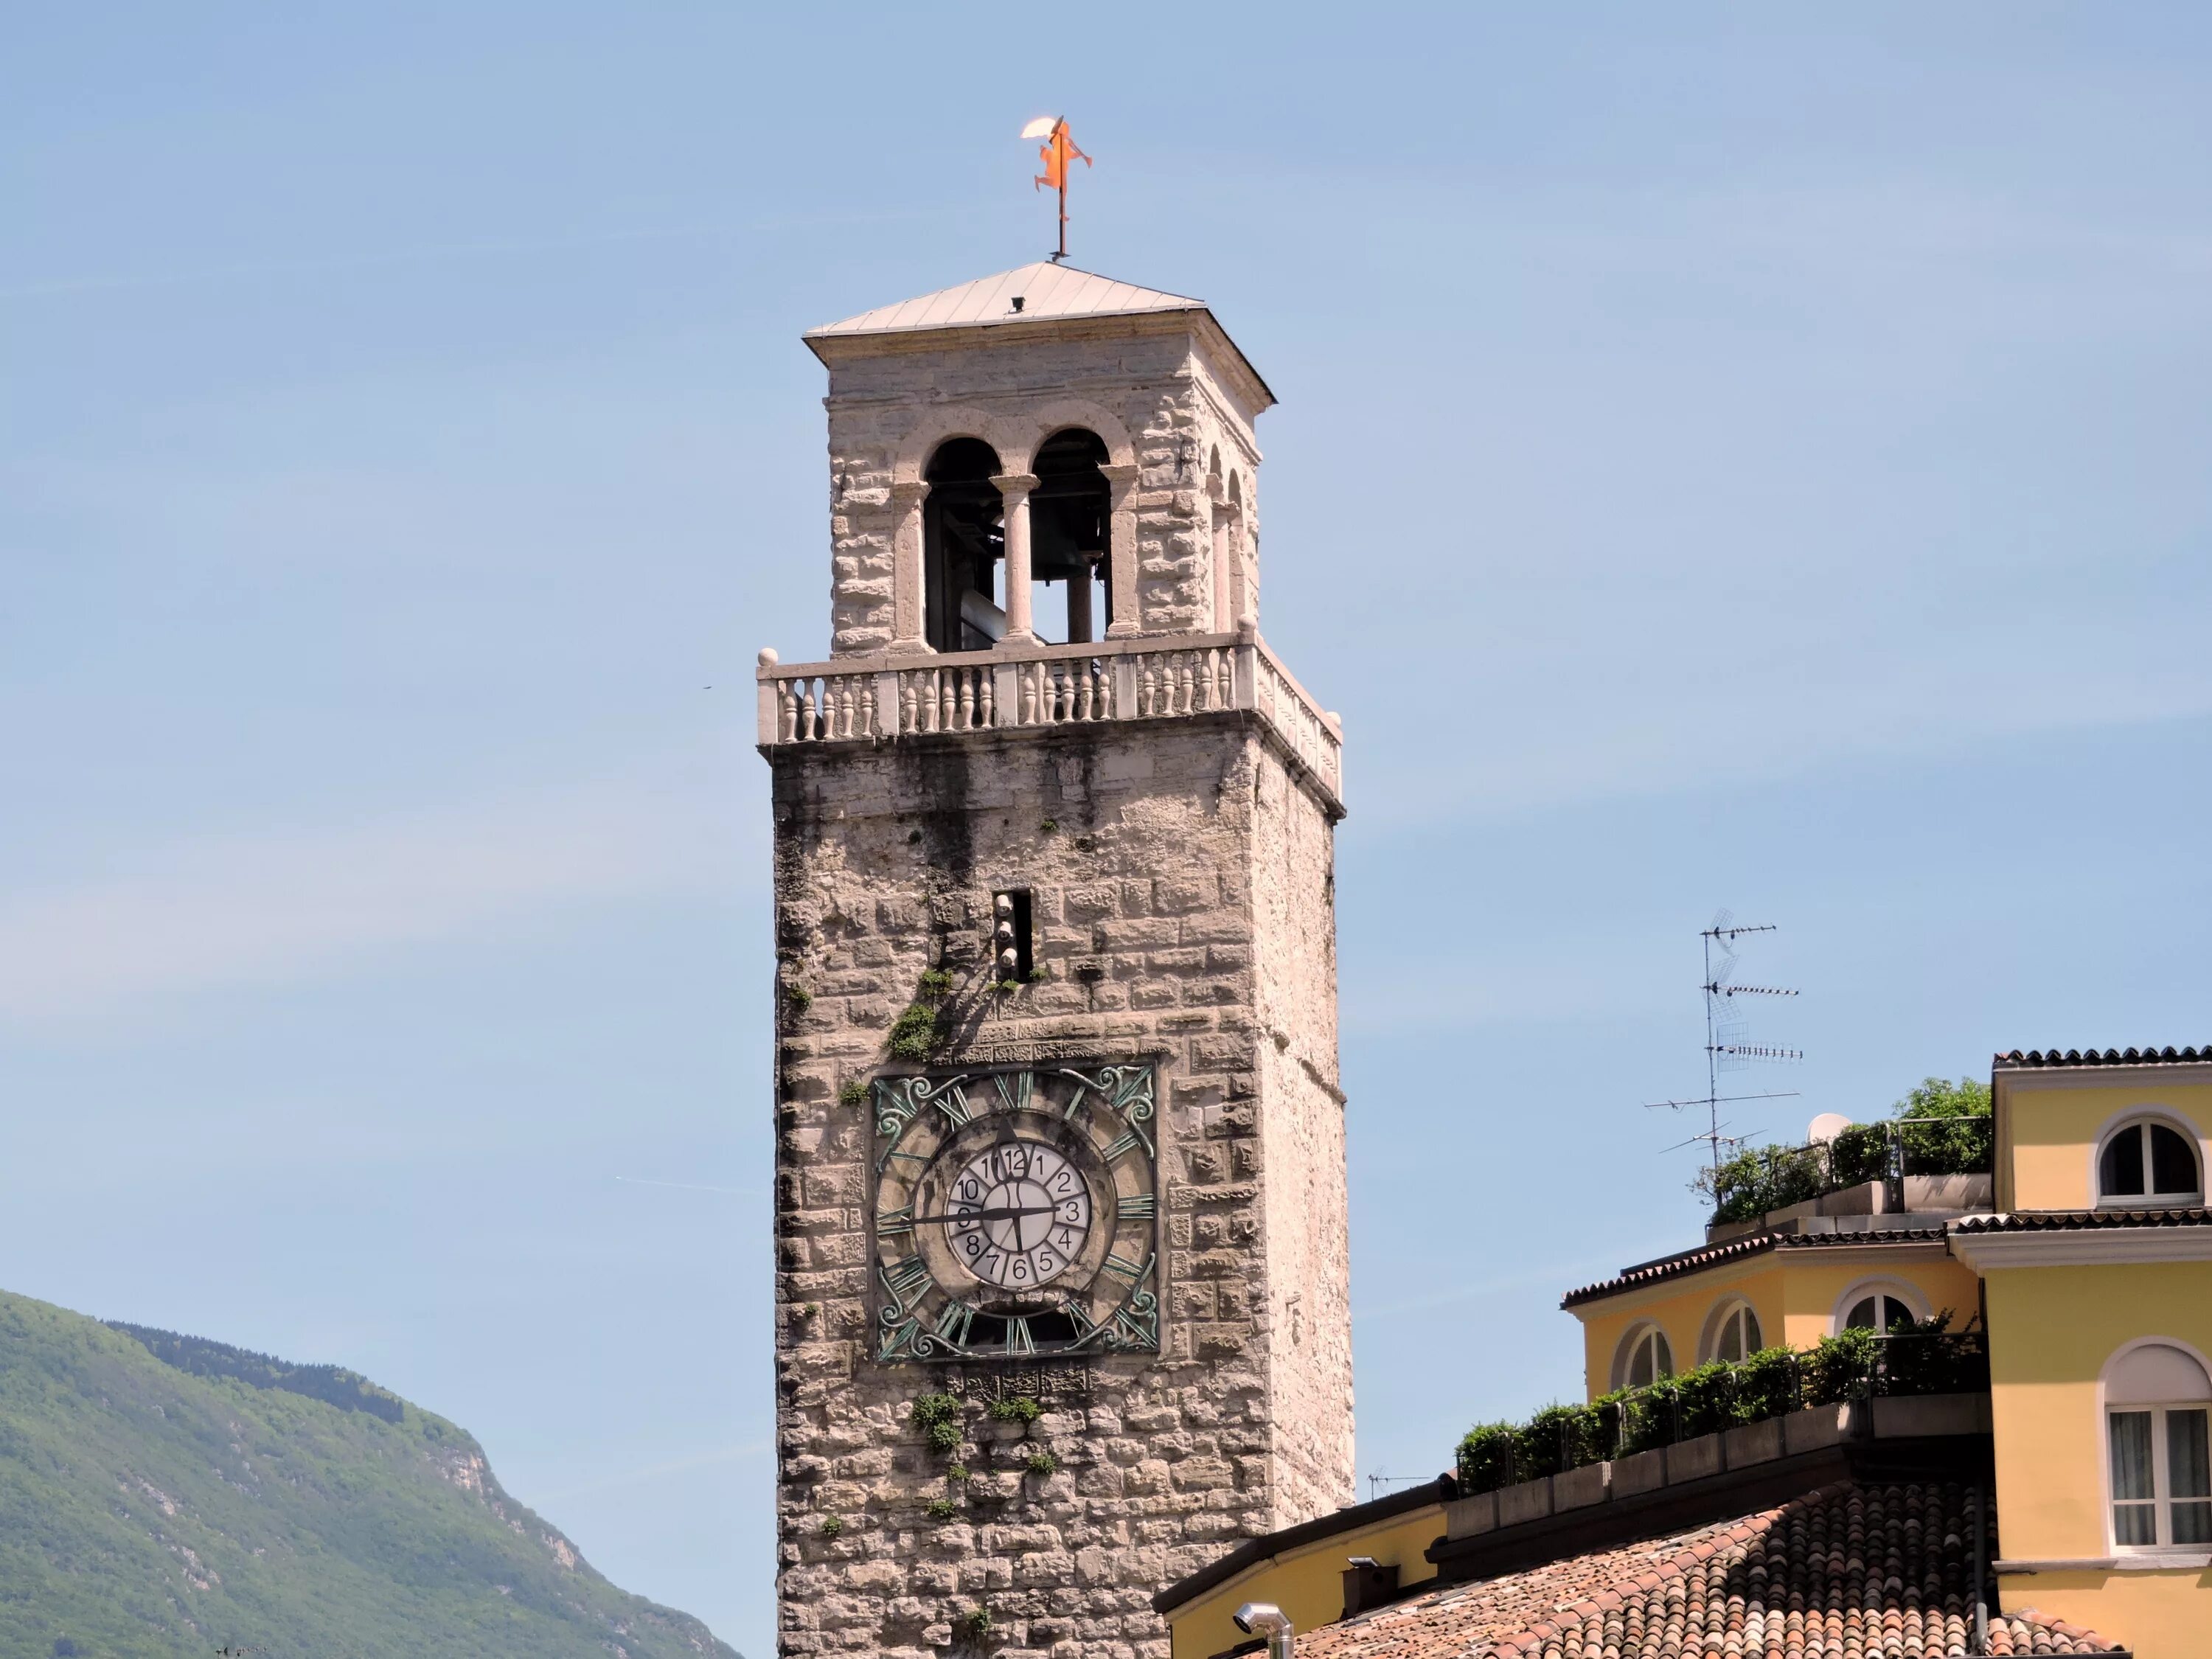 Италия часы время. Рива дель Гарда башенка с часами. Колокольня Италия. Башня дель Гарделло (часовая башня. Орвието Италия колокольня с часами.